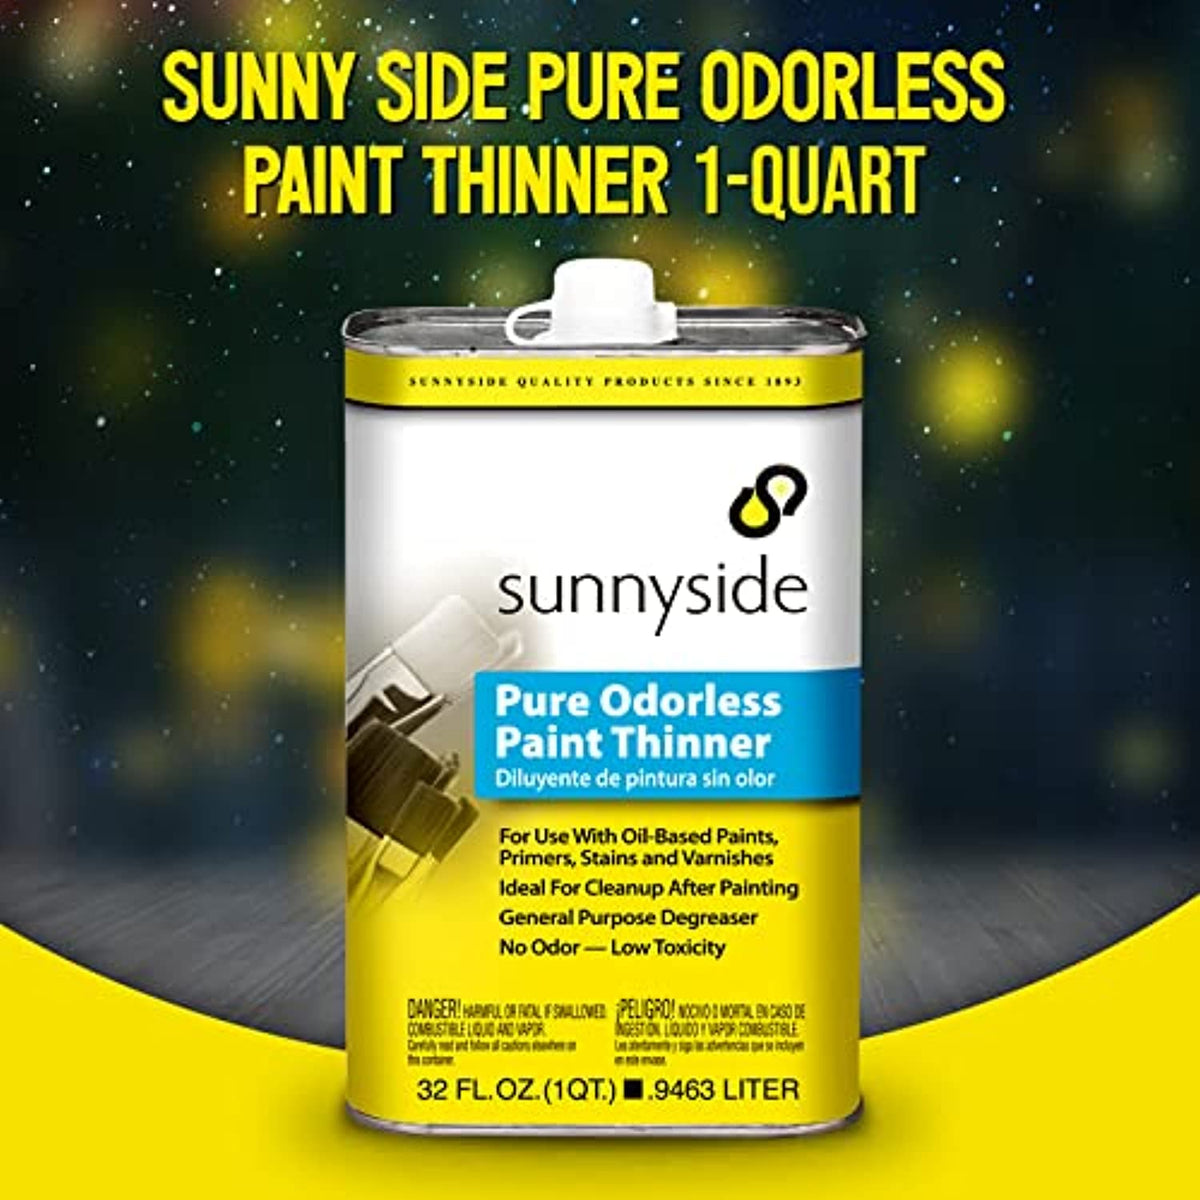 Sunnyside Paint Thinner